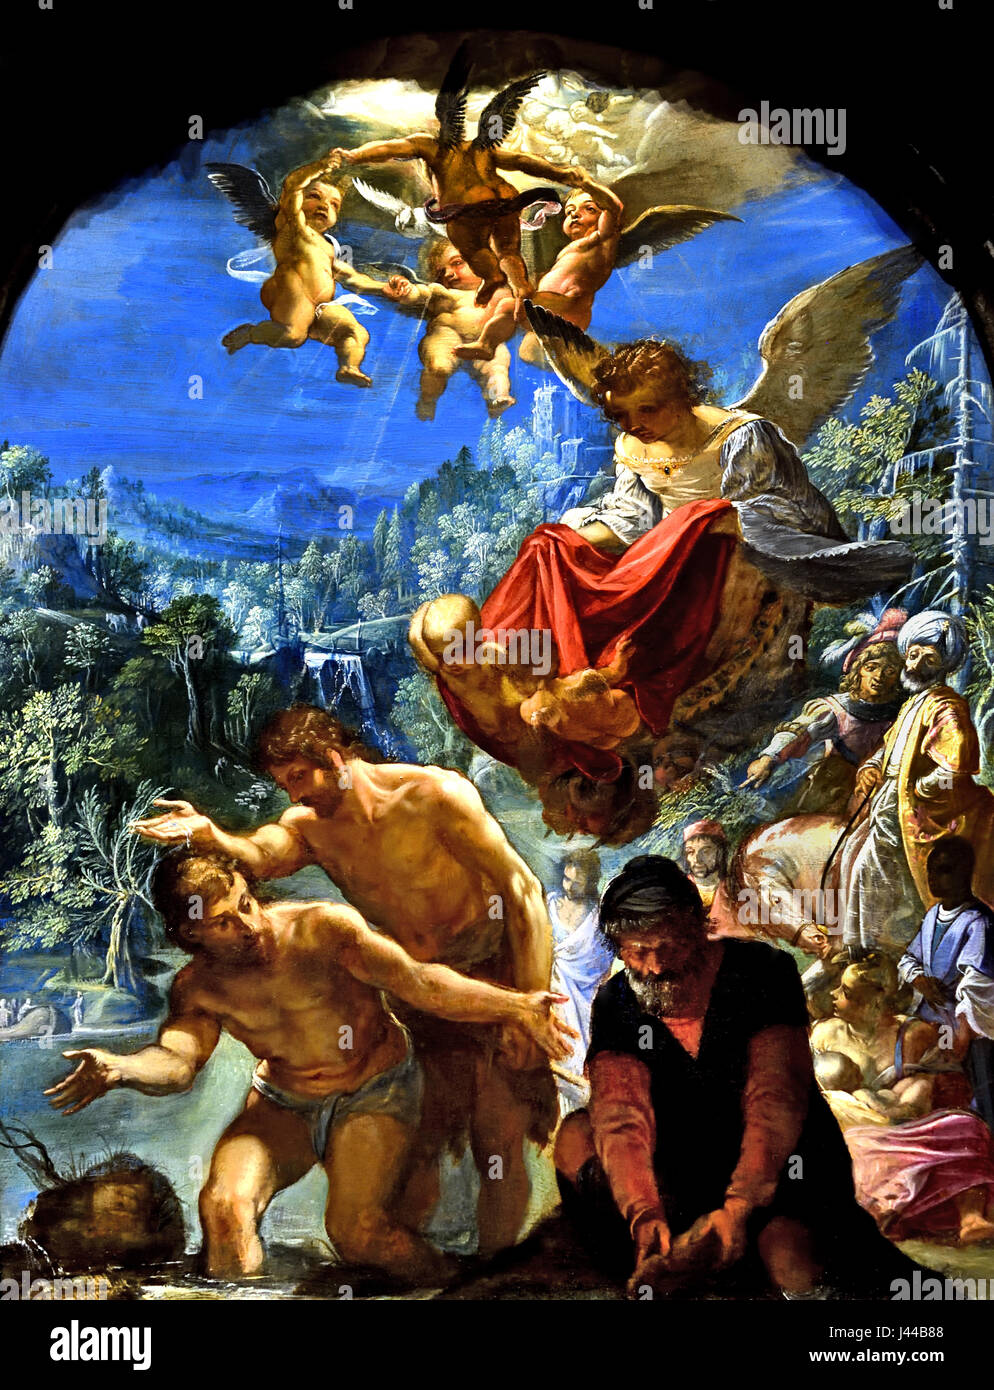 Il Battesimo di Cristo dal 1598 al 1600 Venezia di Adamo Elsheimer (1578–1610) Cristo è mostrato accovacciato nel fiume Giordano mentre San Giovanni lo battezza, versando acqua sul suo capo. Foto Stock